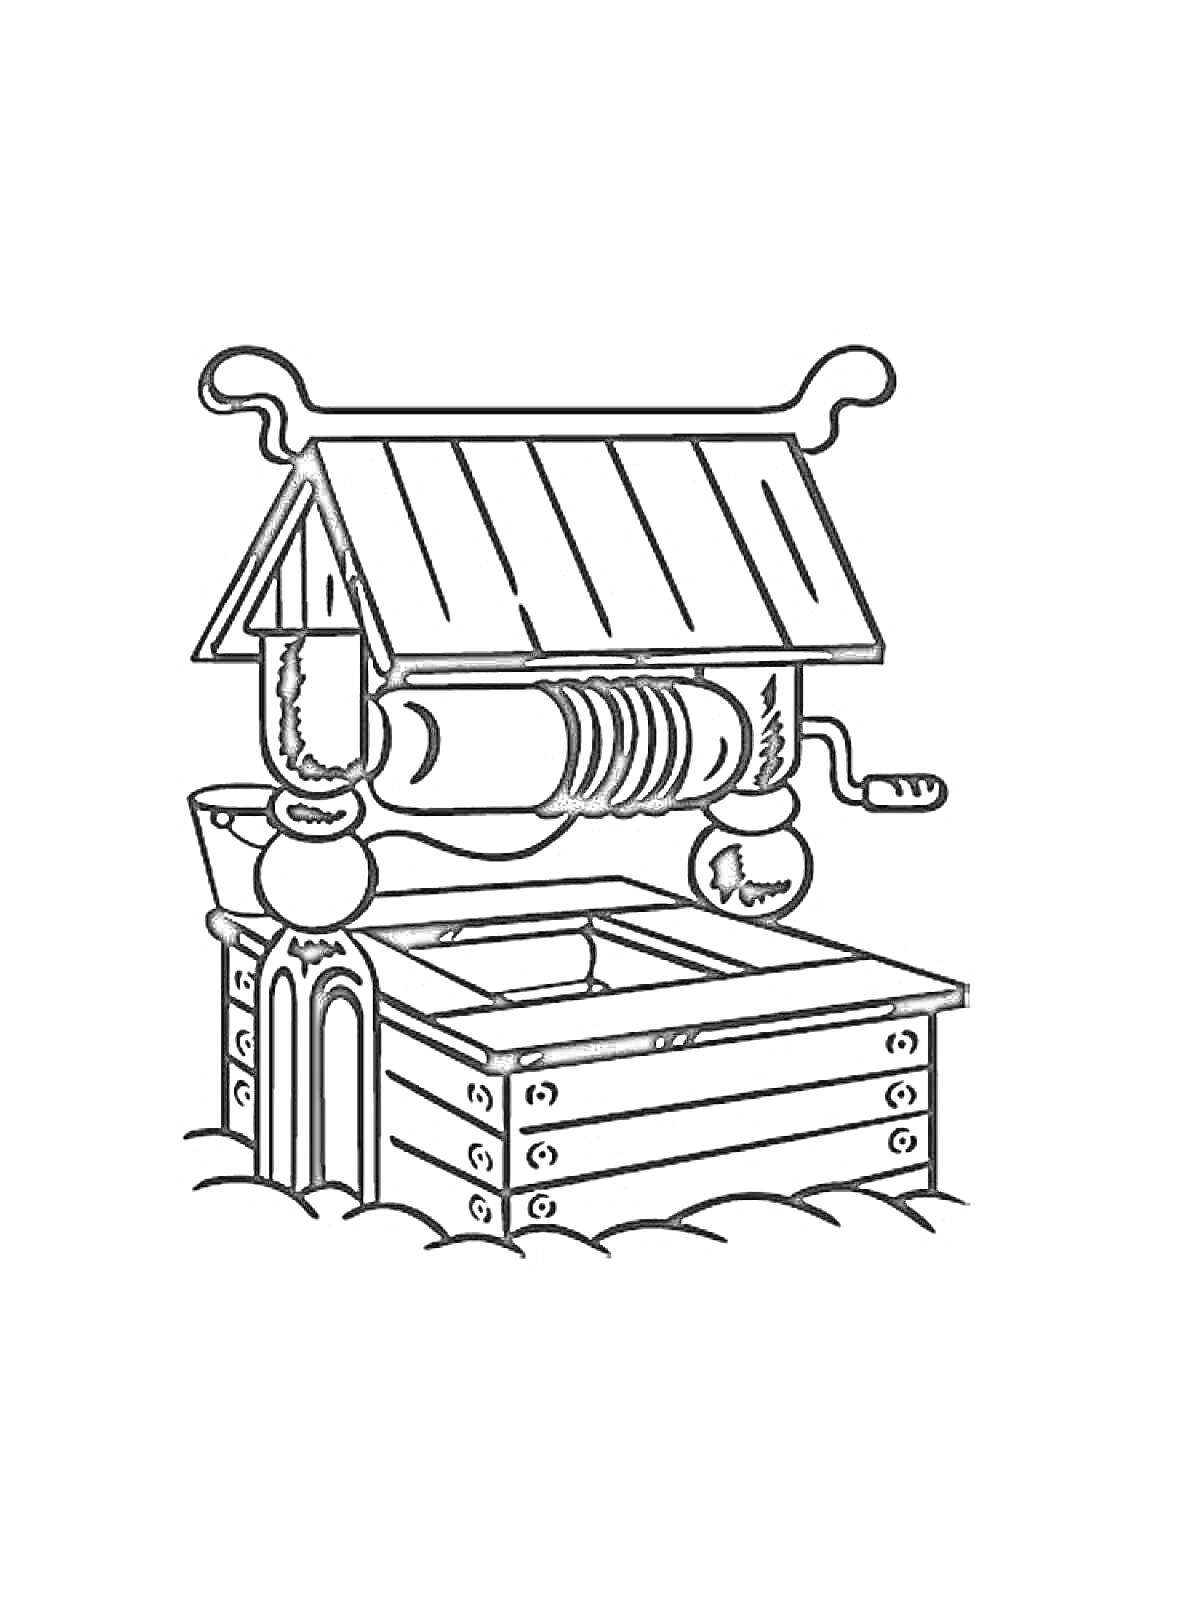 Колодец с крышей, ручкой для подъема ведра и деревянной основой